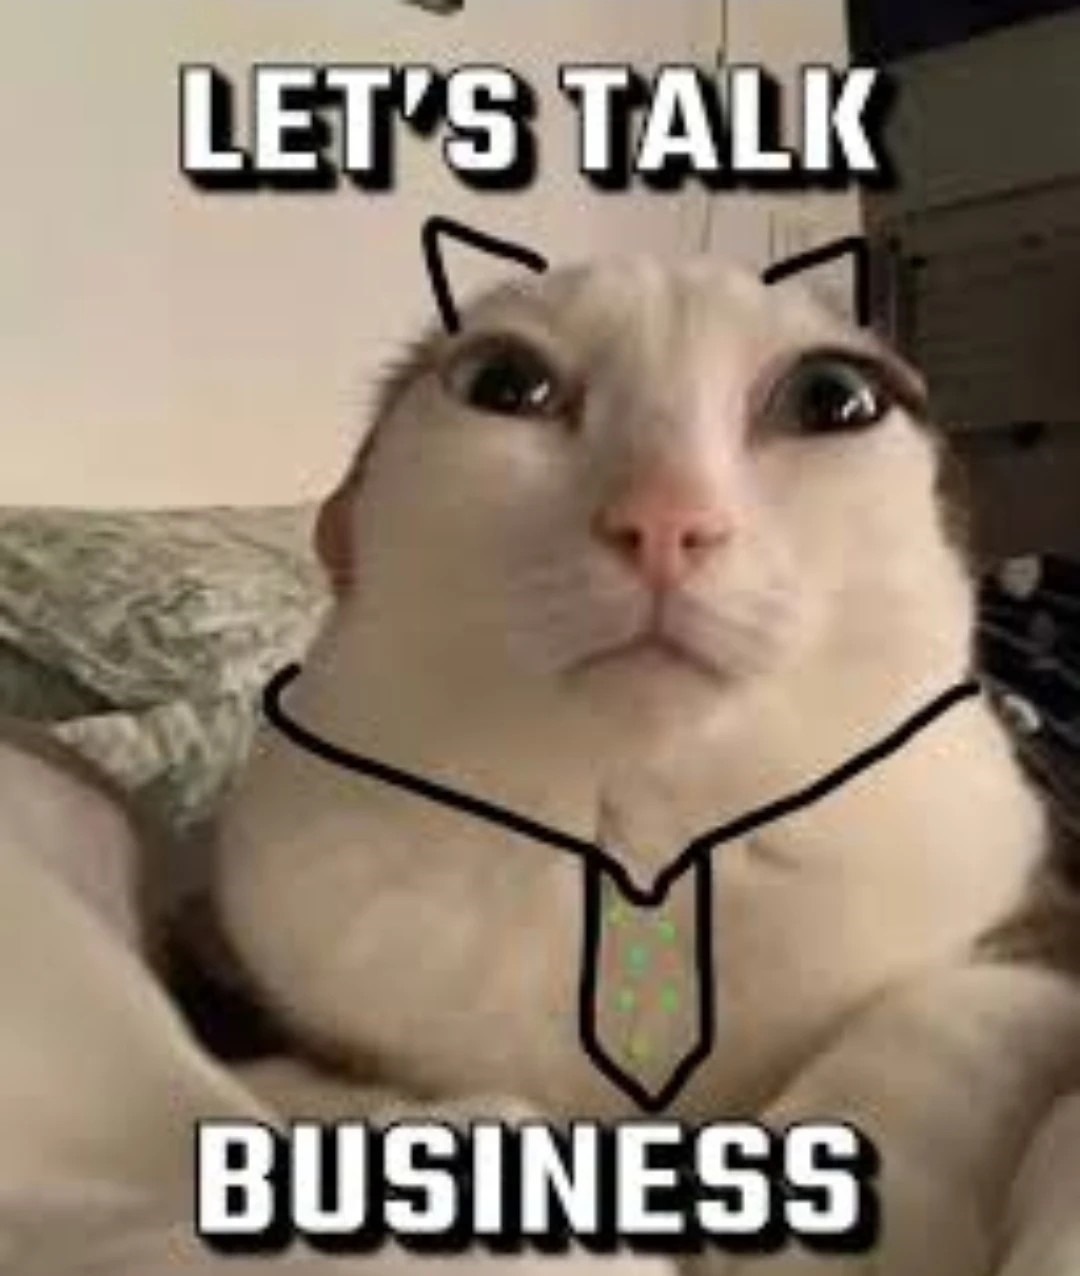 Let's talk business - meme